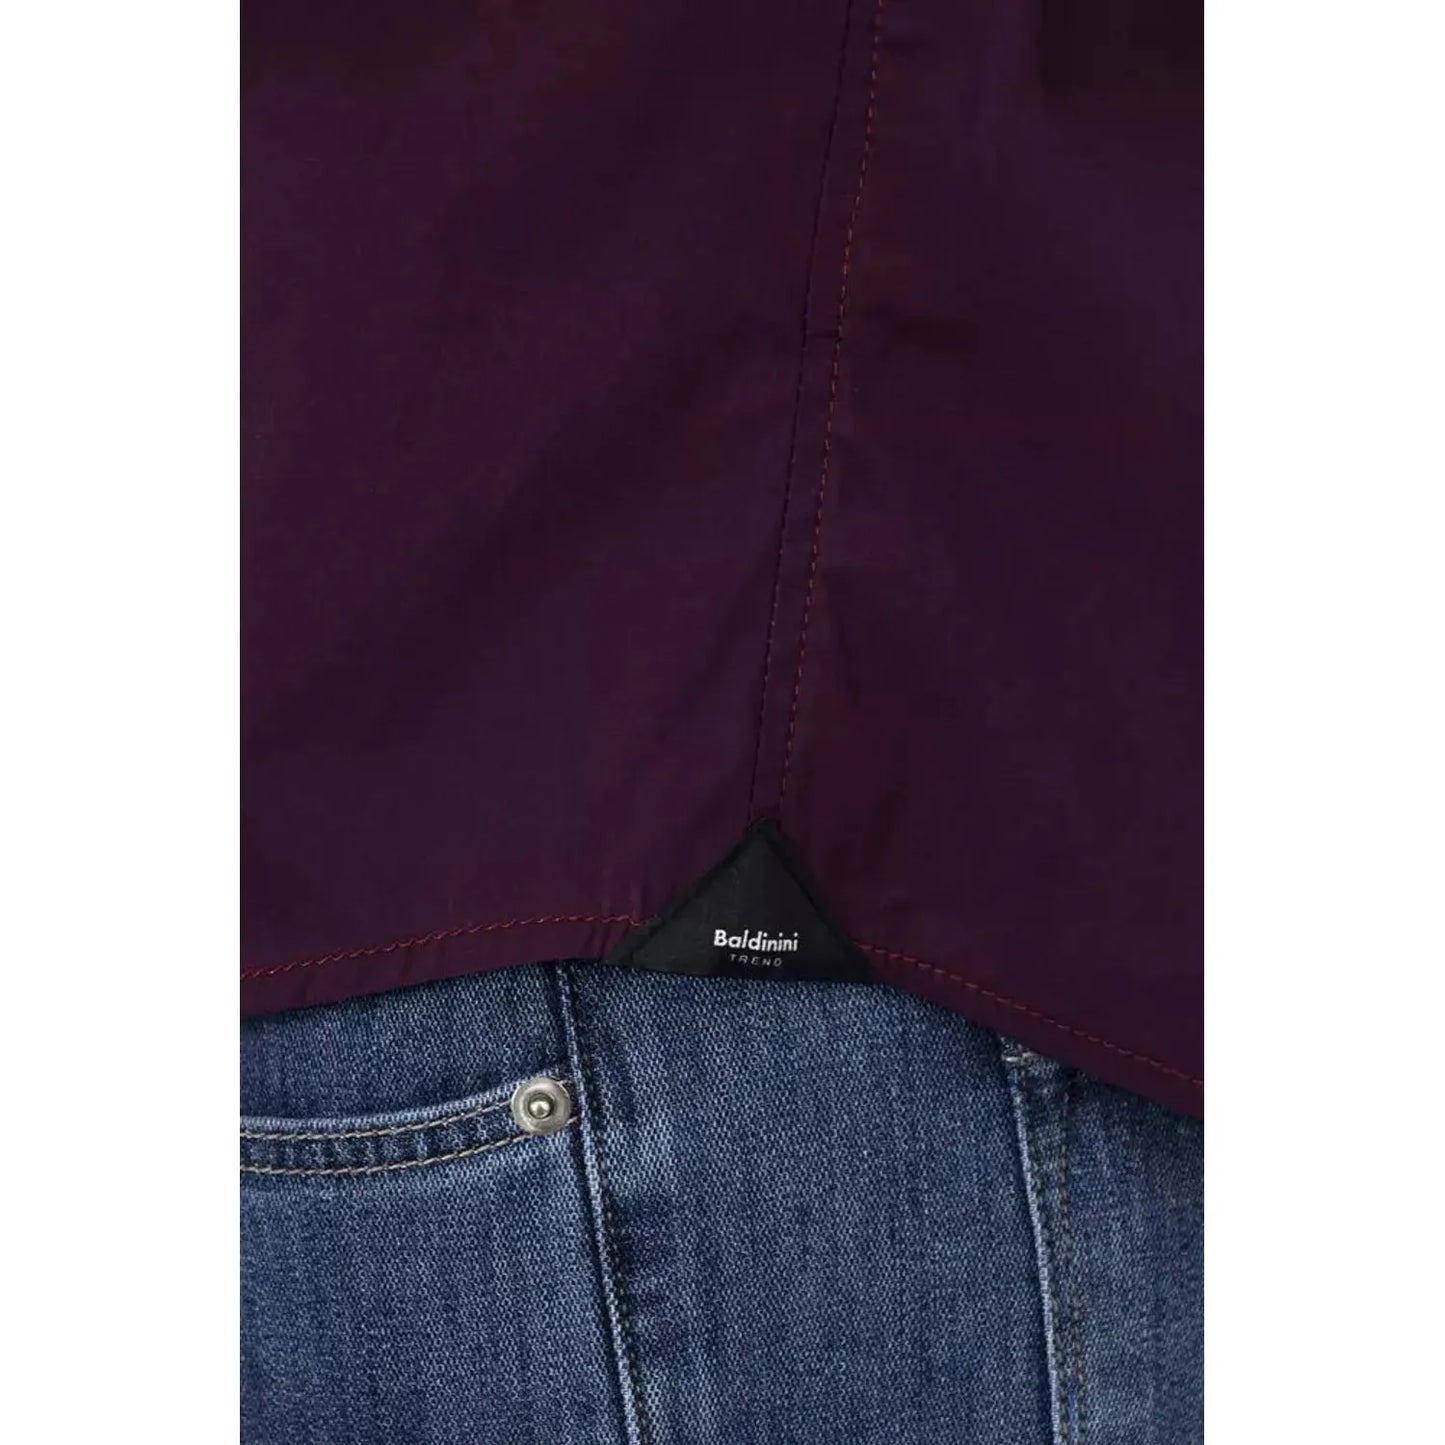 Baldinini Trend Chic Bordeaux Slim Fit Men's Shirt burgundy-cotton-shirt-5 product-22601-1340680926-21-1cabbd3b-cfc.webp